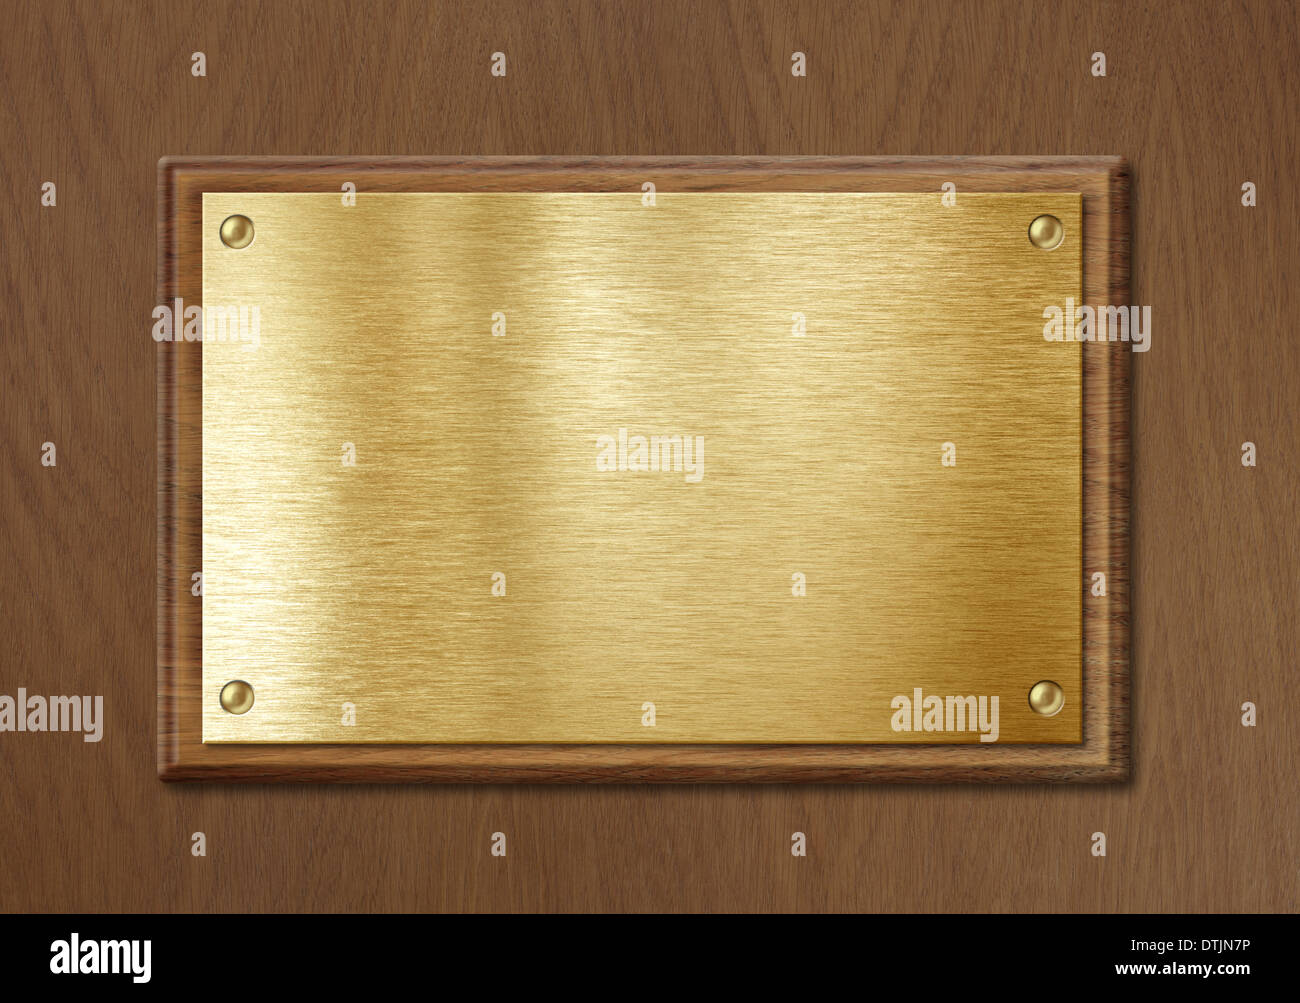 Golden o piastra in ottone per nameboard o diploma in background il telaio in legno Foto Stock